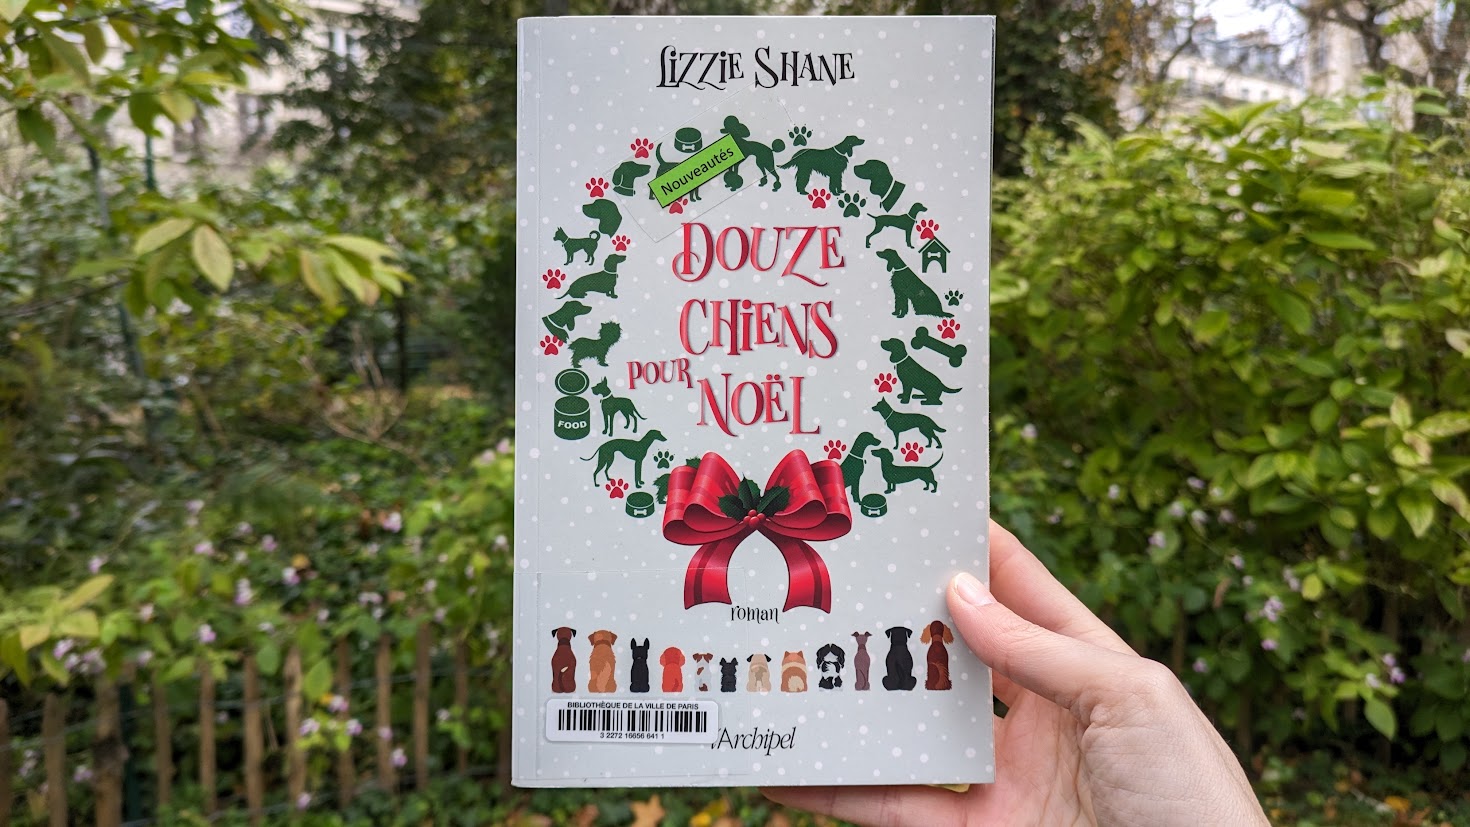 Douze chiens pour Noël – Lizzie Shane